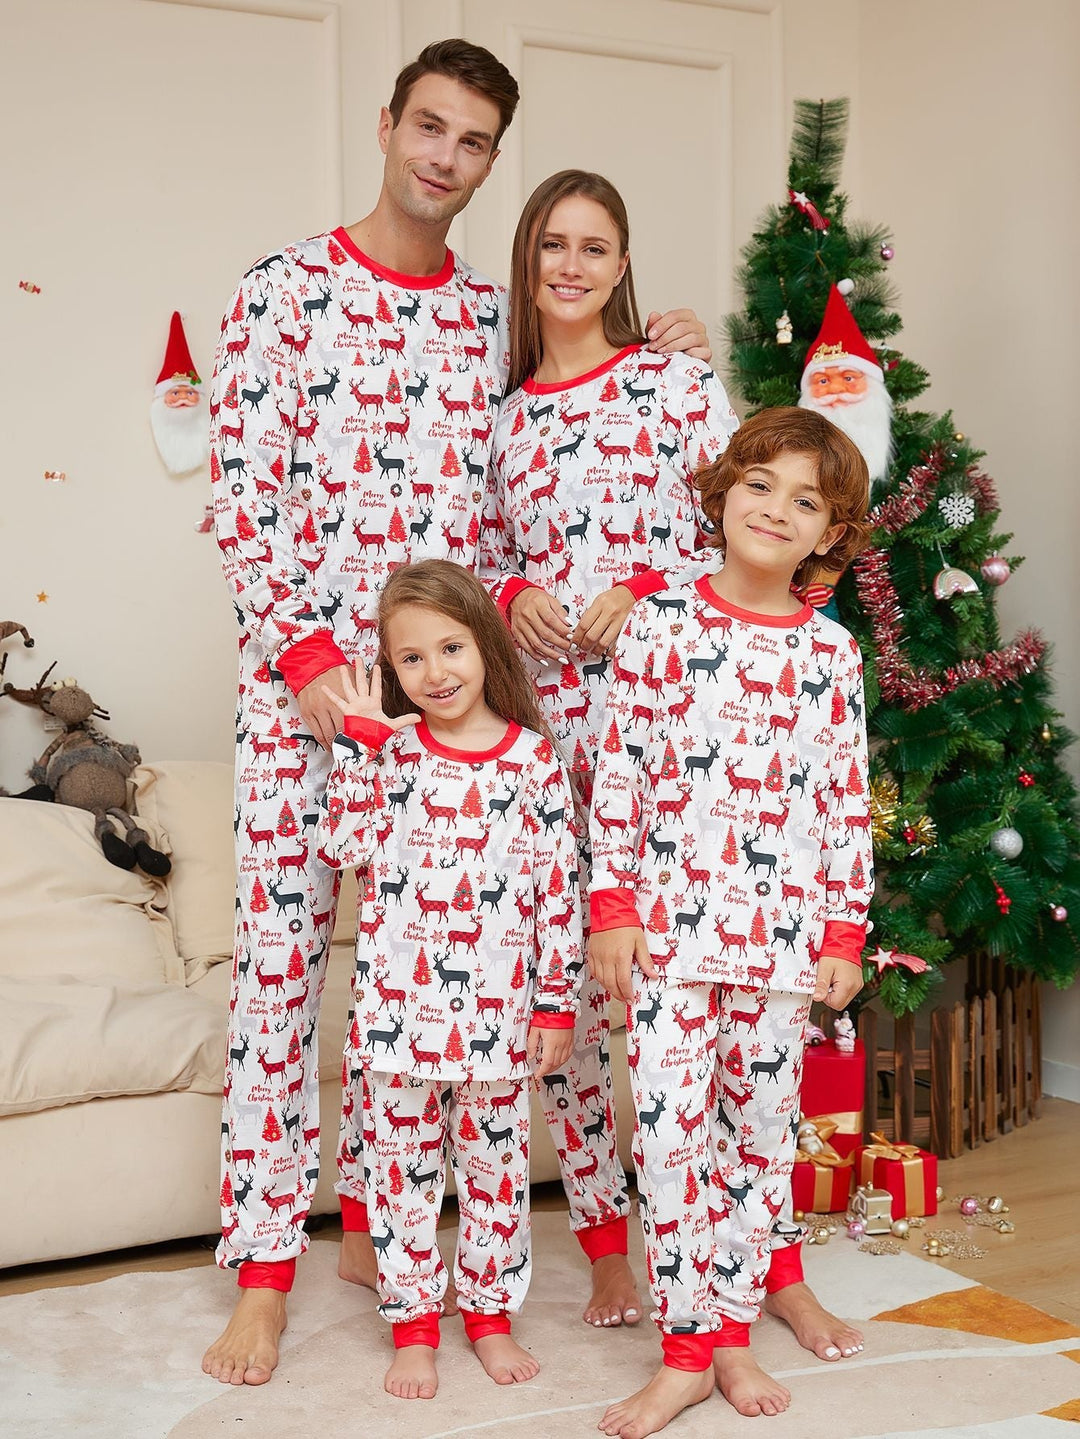 Christmas deer Print Fmalily Matching Pajamas Sets